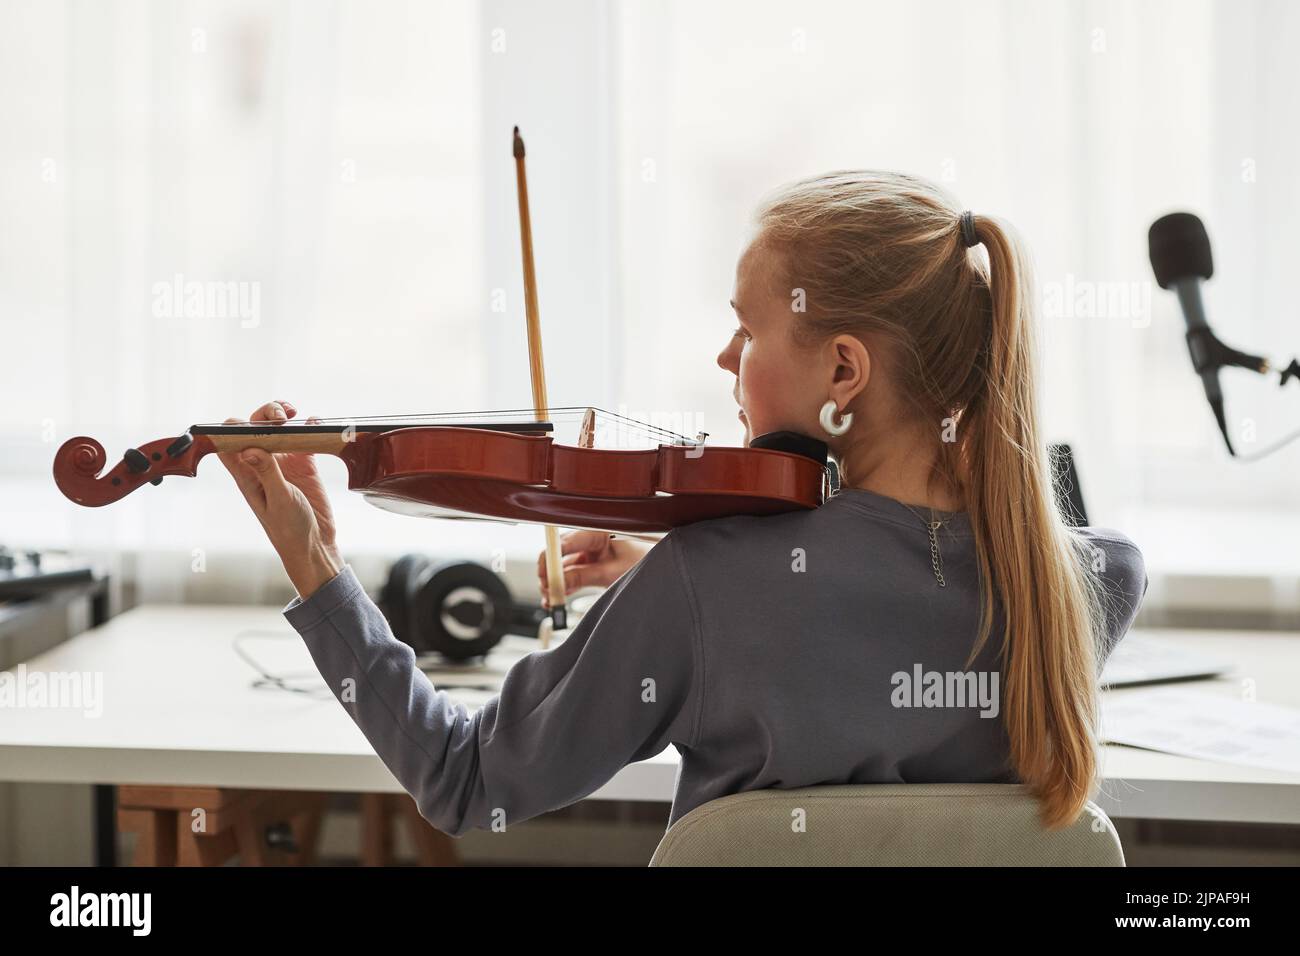 Vista trasera de una joven rubia tocando violín en el estudio contra la luz de la ventana, espacio de copia Foto de stock